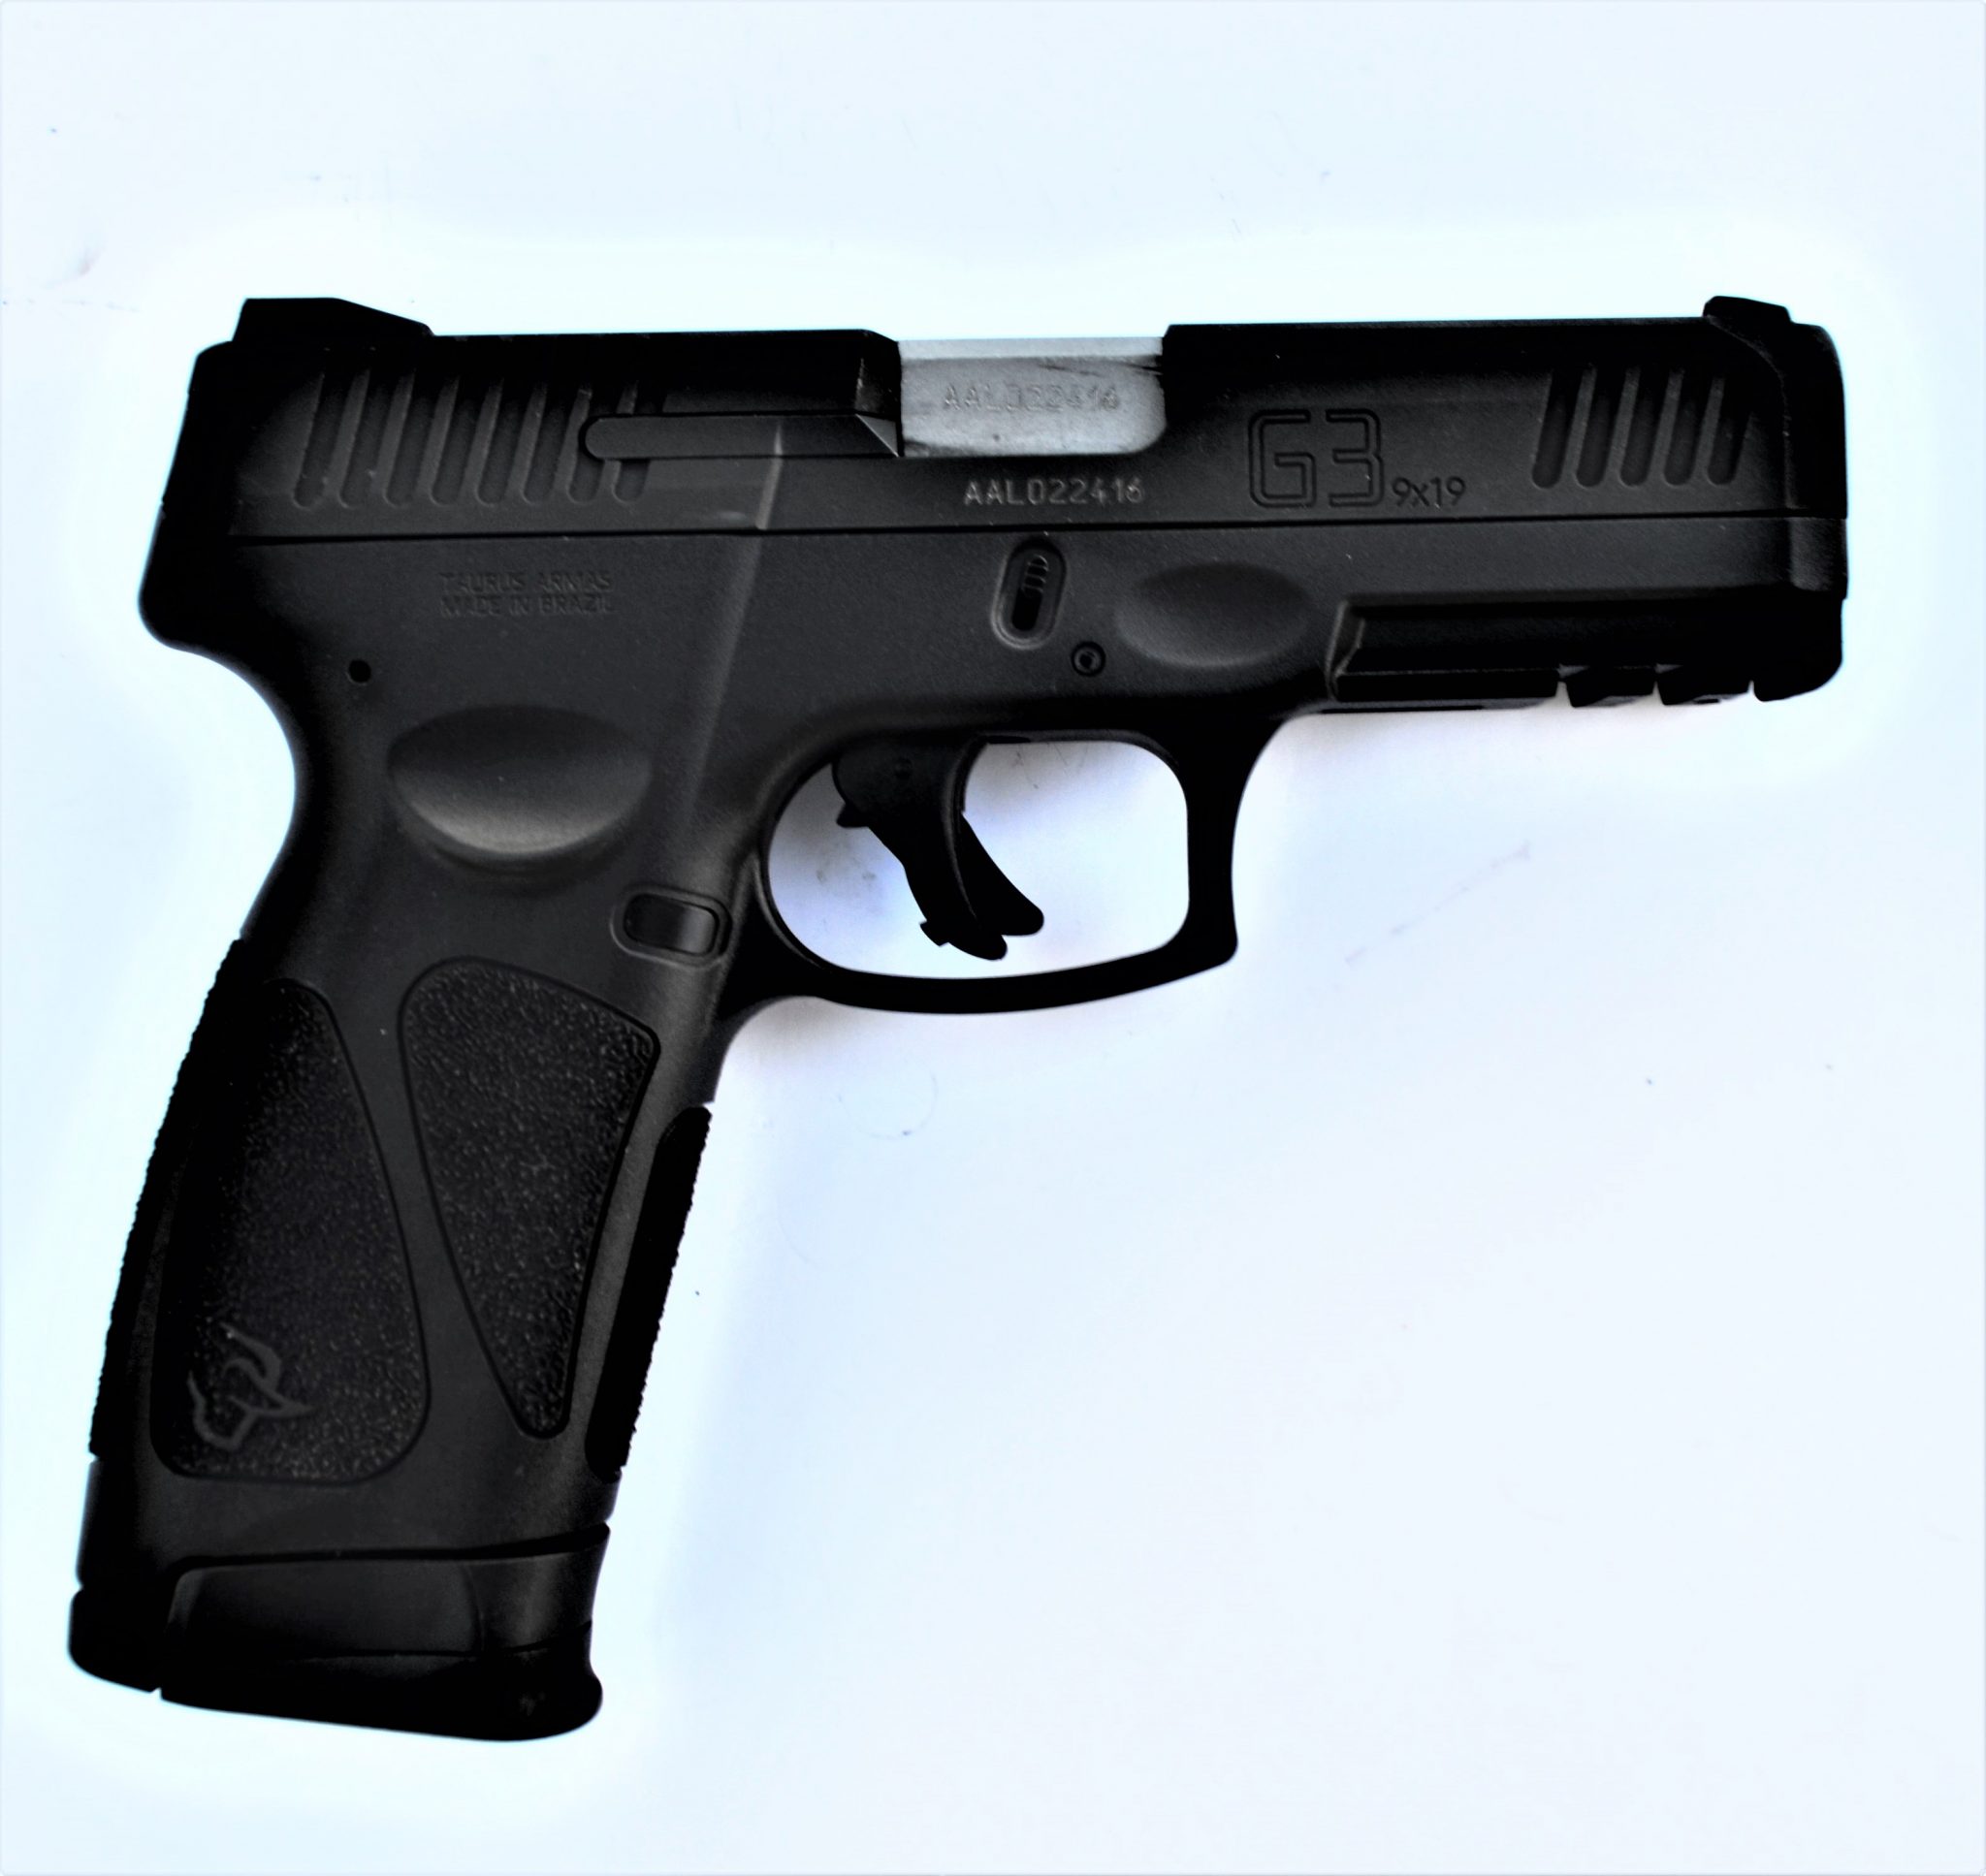 taurus g3 9mm vs glock 19